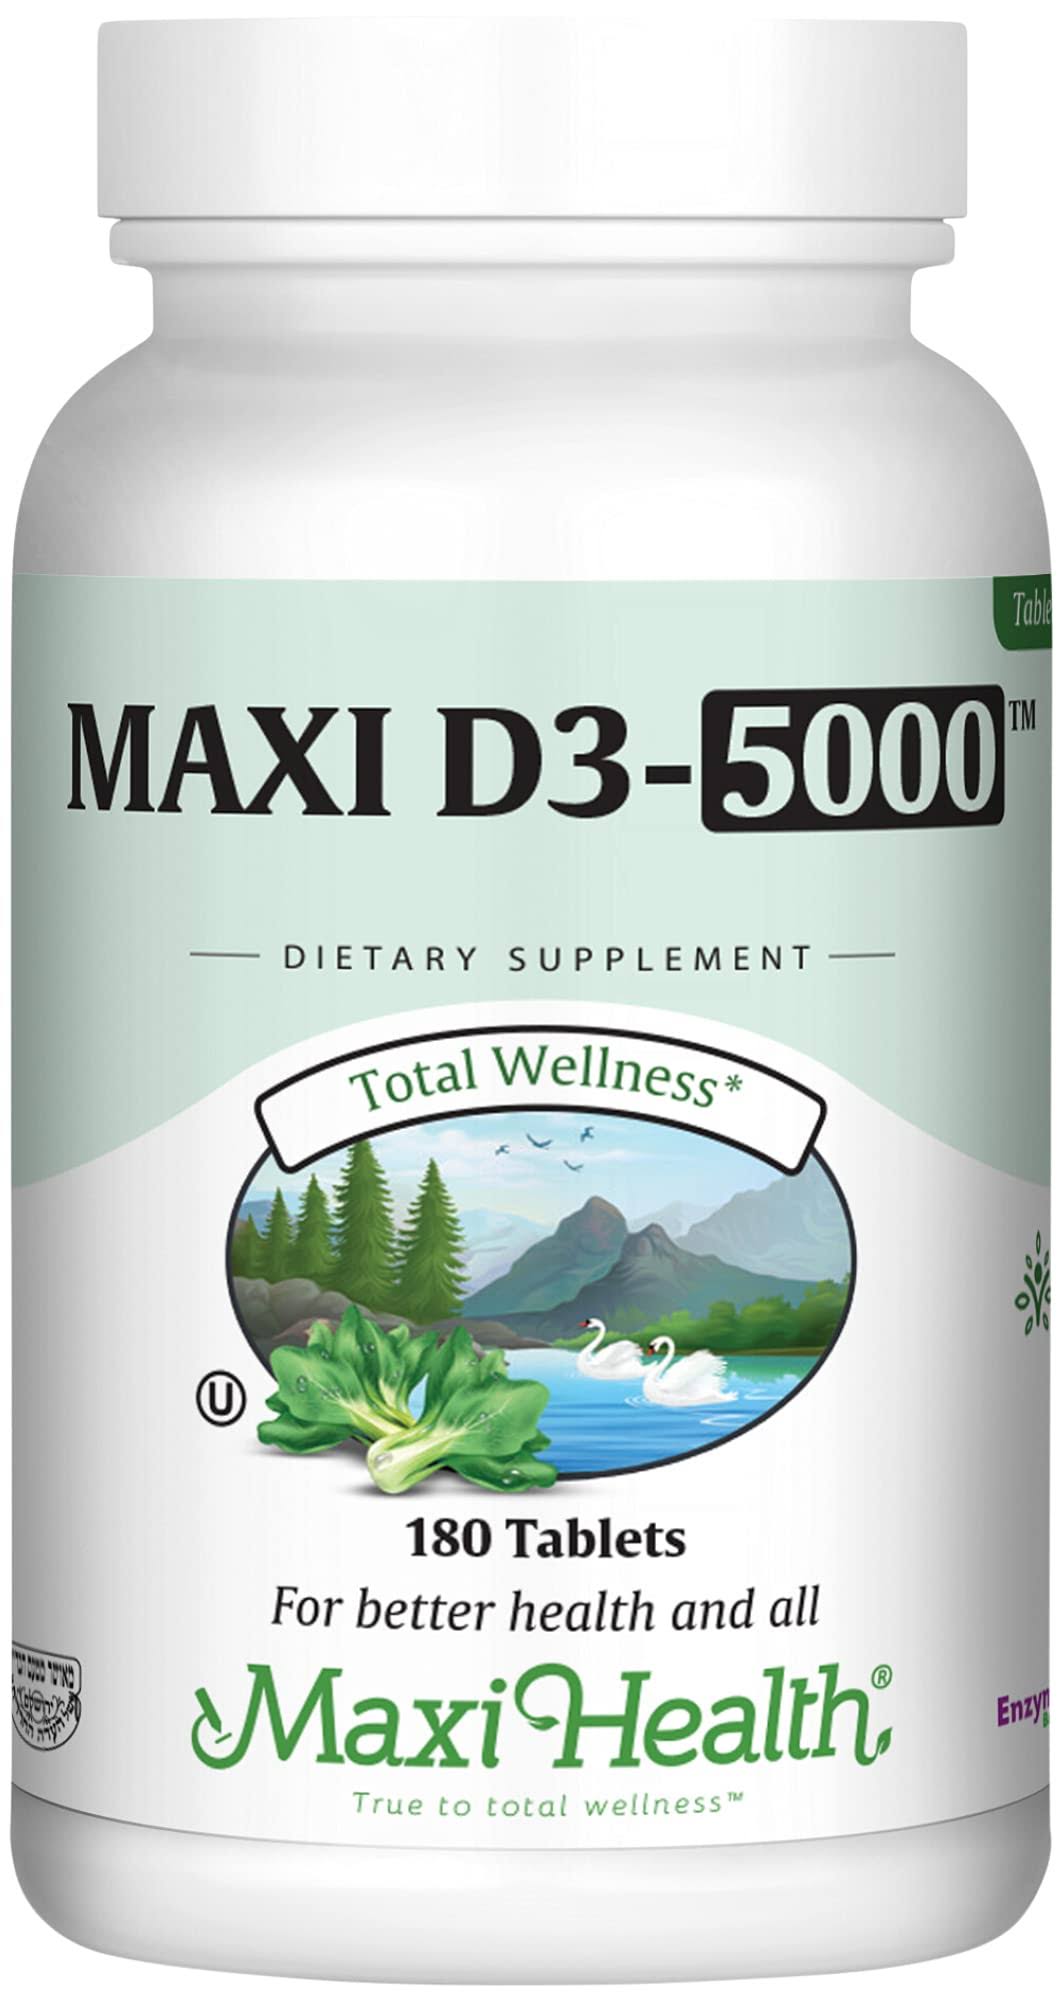 Maxi Health Vitamin D3 5000 IU - 180 Tablets